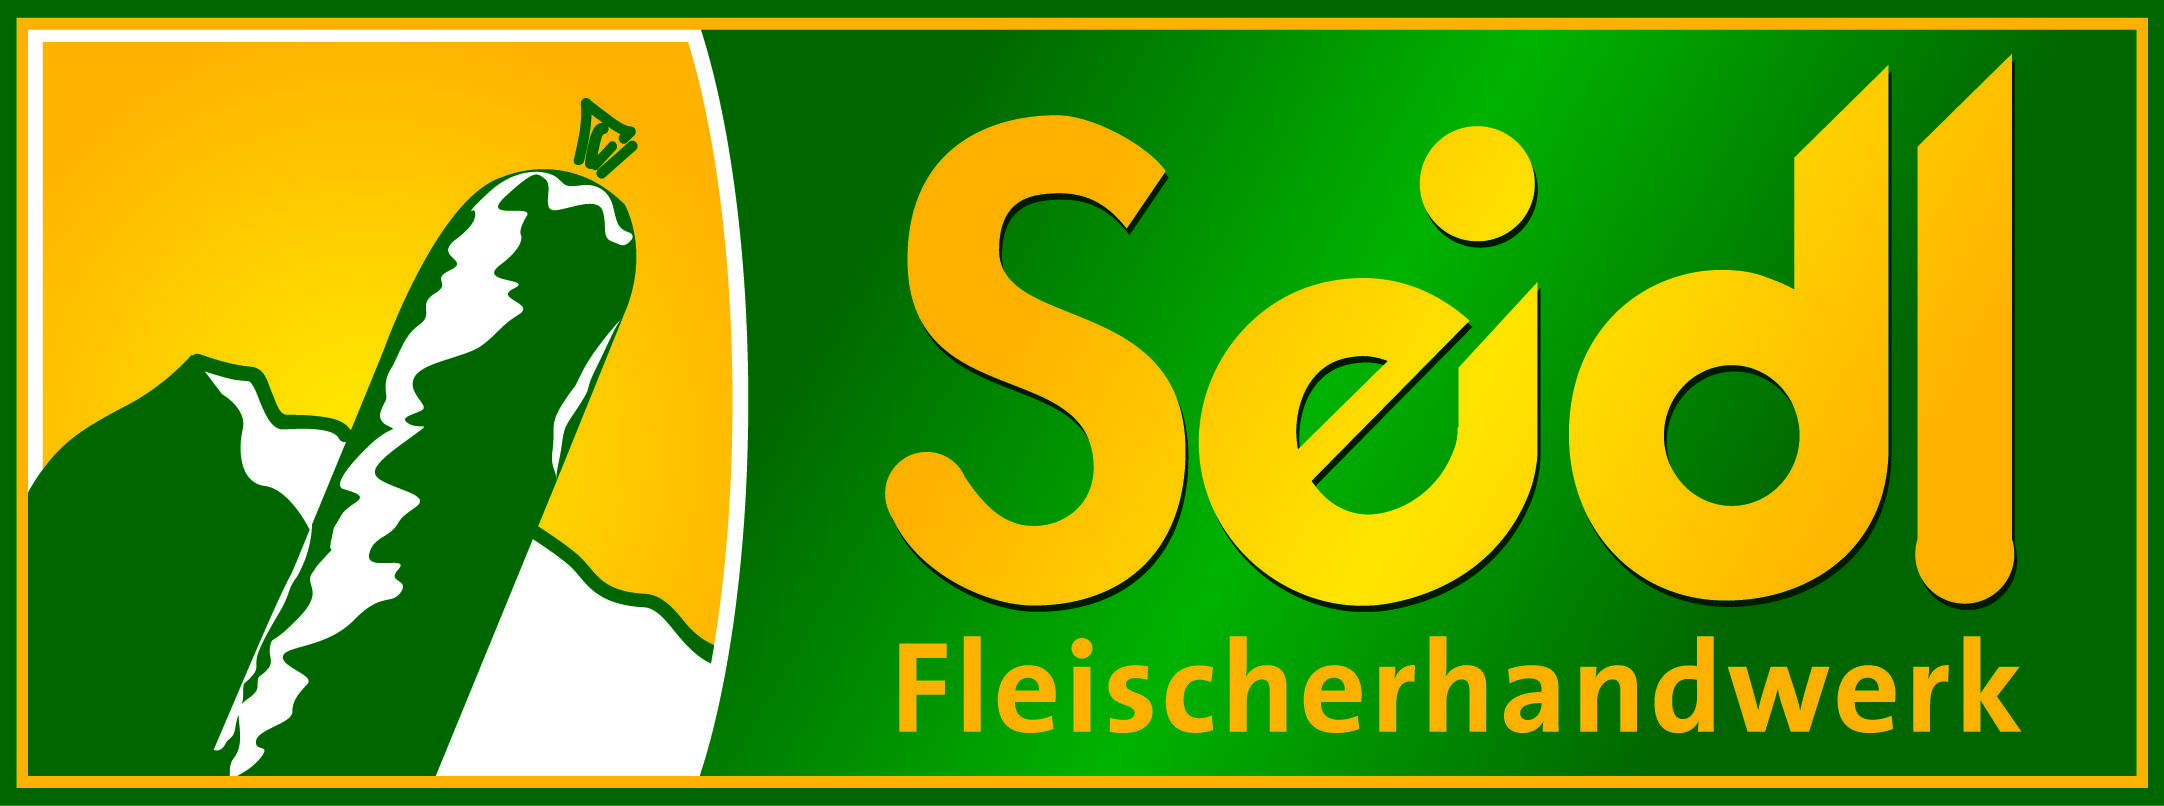 Seidl Fleischerhandwerk GmbH